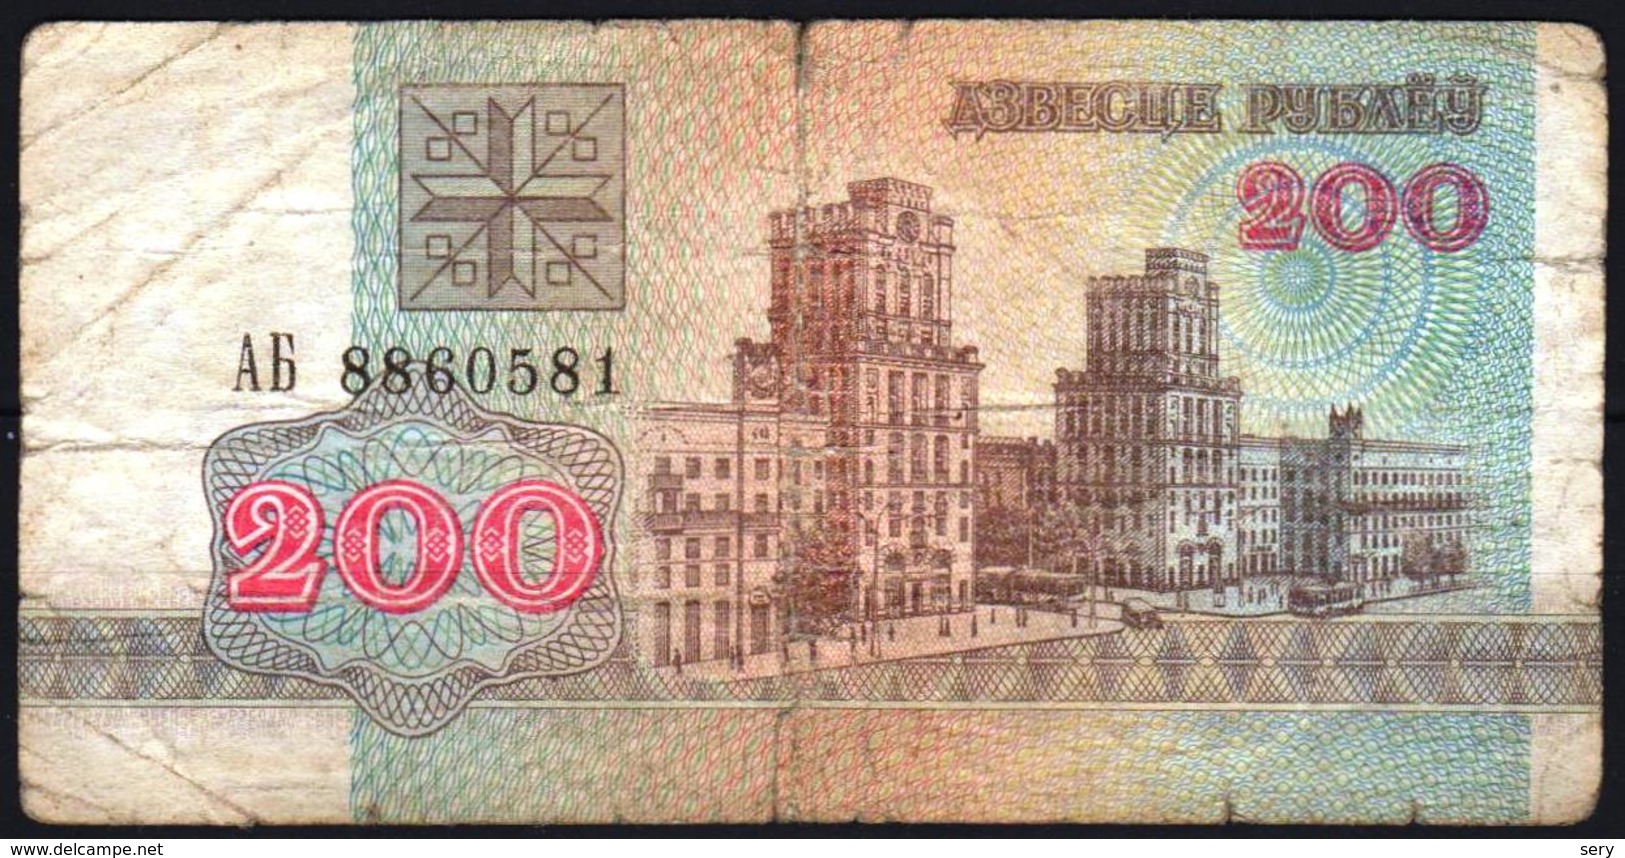 Belarus 1992  Banknote Circulated 200 Rubles  As Per Scan - Belarus